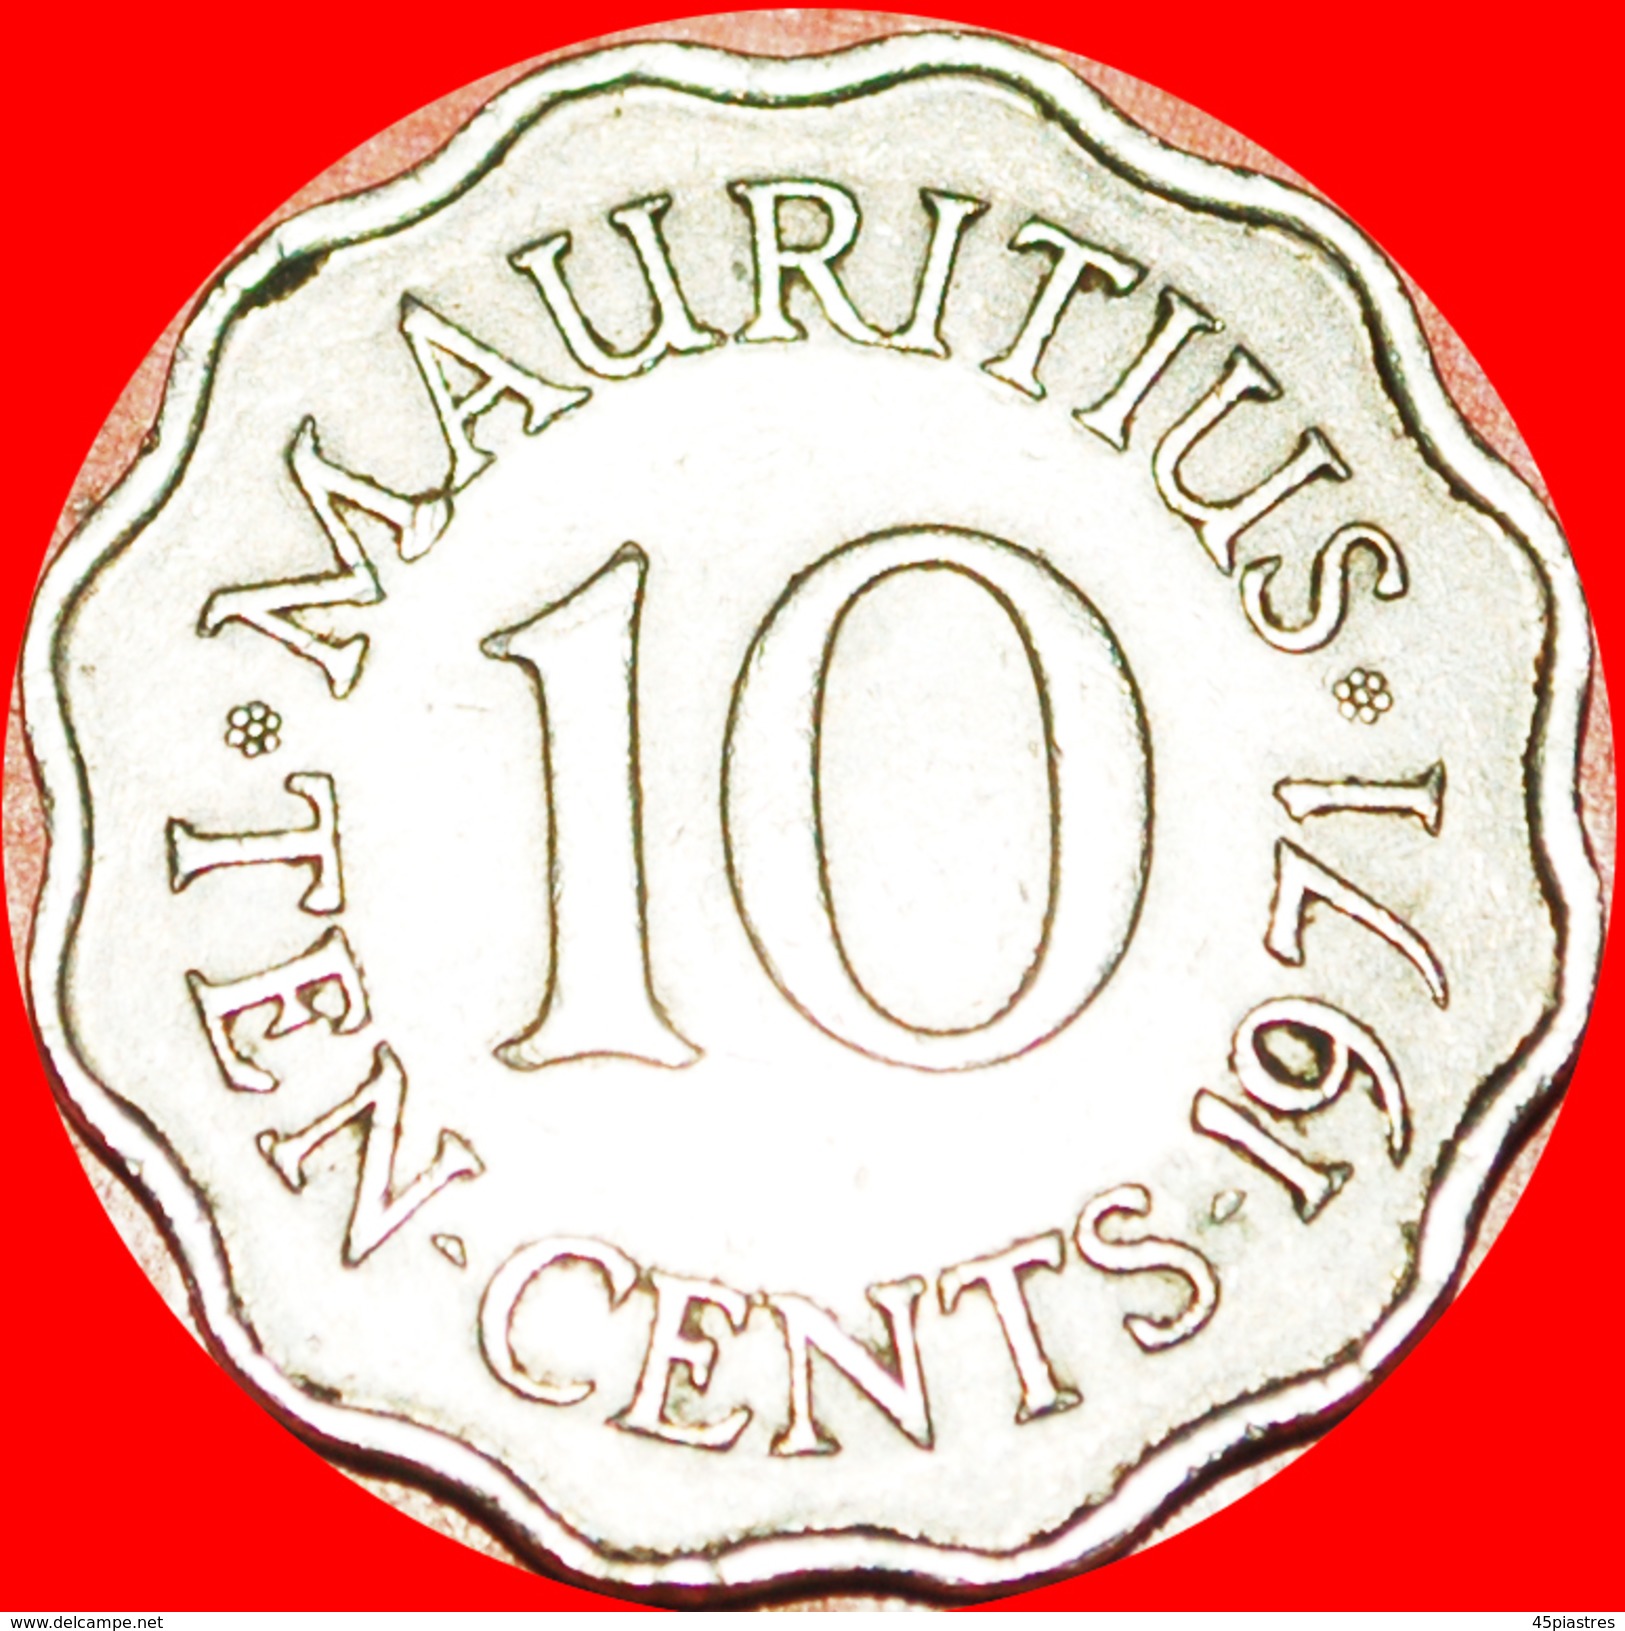 § PORTRAIT: MAURITIUS &#x2605; 10 CENTS 1971! LOW START&#x2605; NO RESERVE! - Mauritius